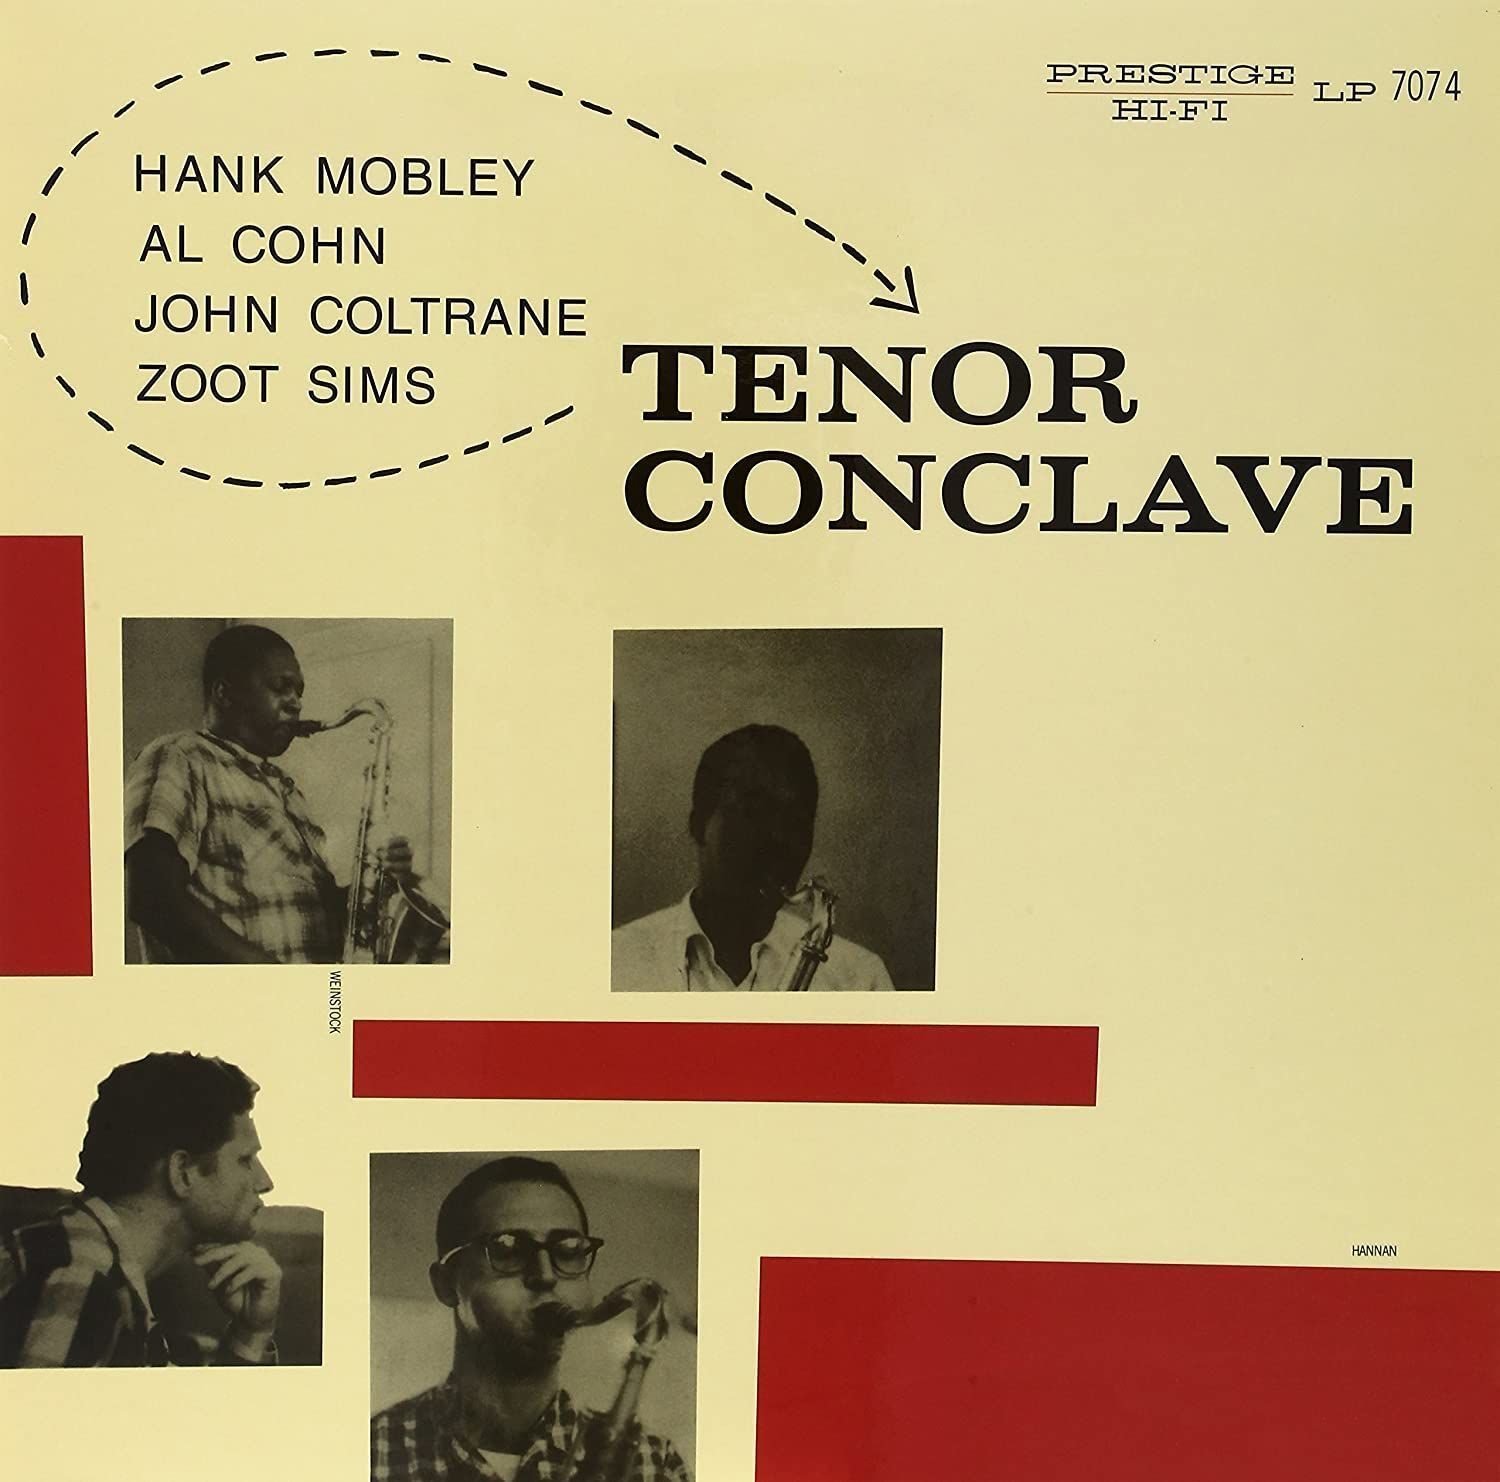 Vinyl Record The Prestige All Stars - Tenor Conclave (LP)